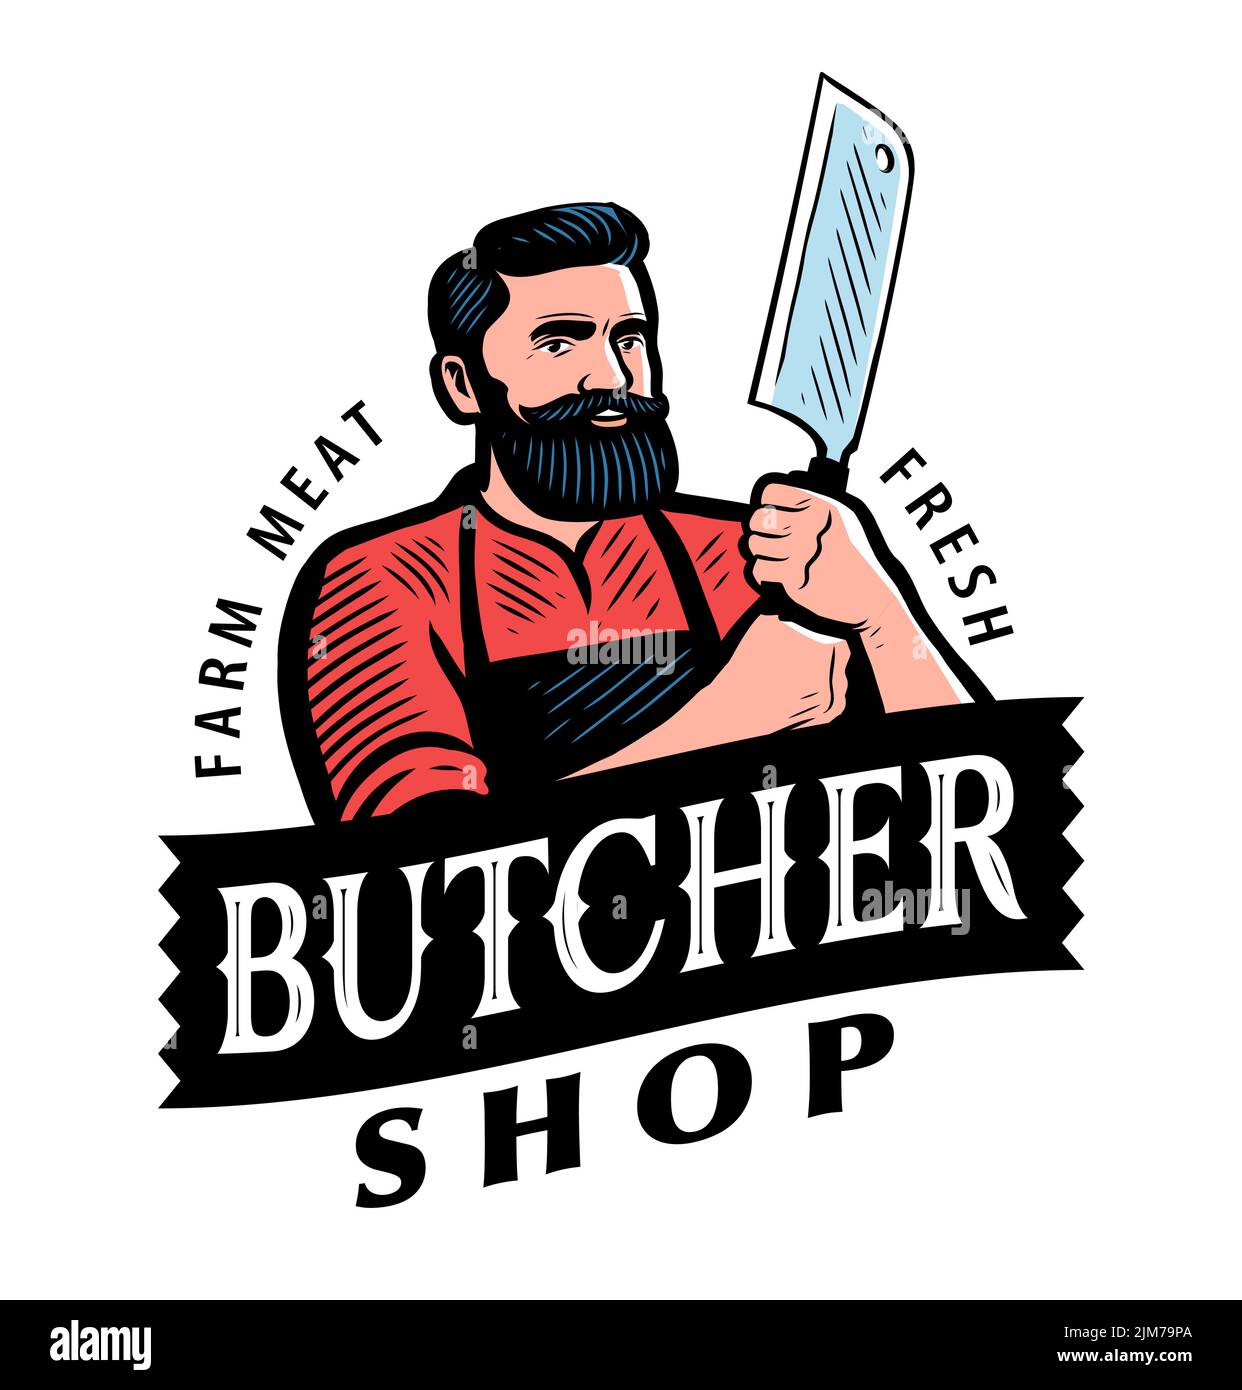 Butcher with Meat cleaver. Emblem or logo for butcher shop, steakhouse menu, grill restaurant. Vector illustration Stock Vector